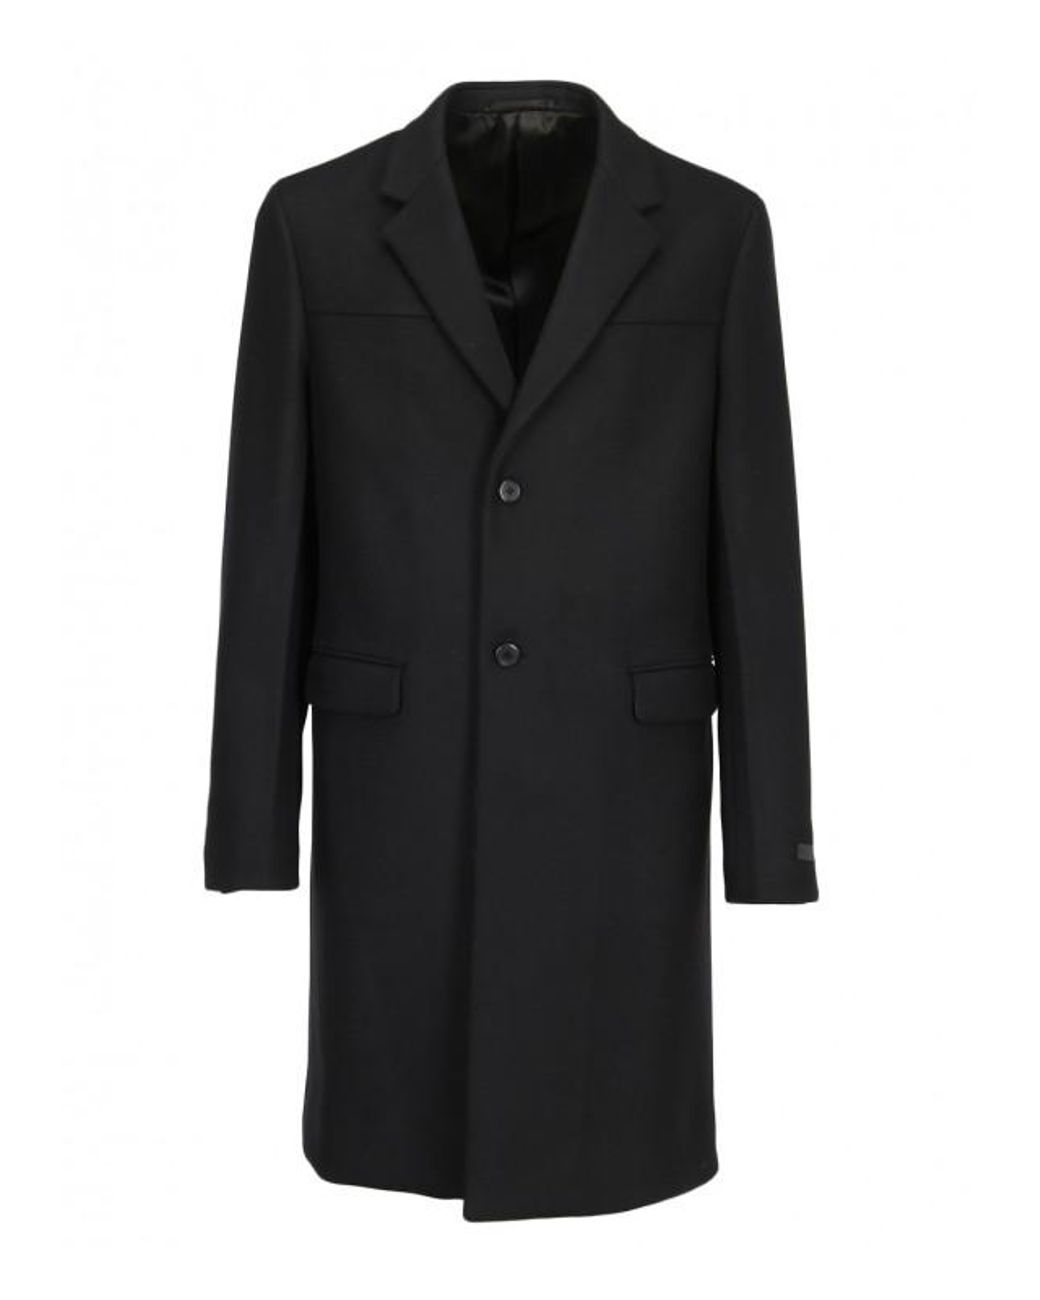 Prada Fleece Coat in Black for Men - Lyst